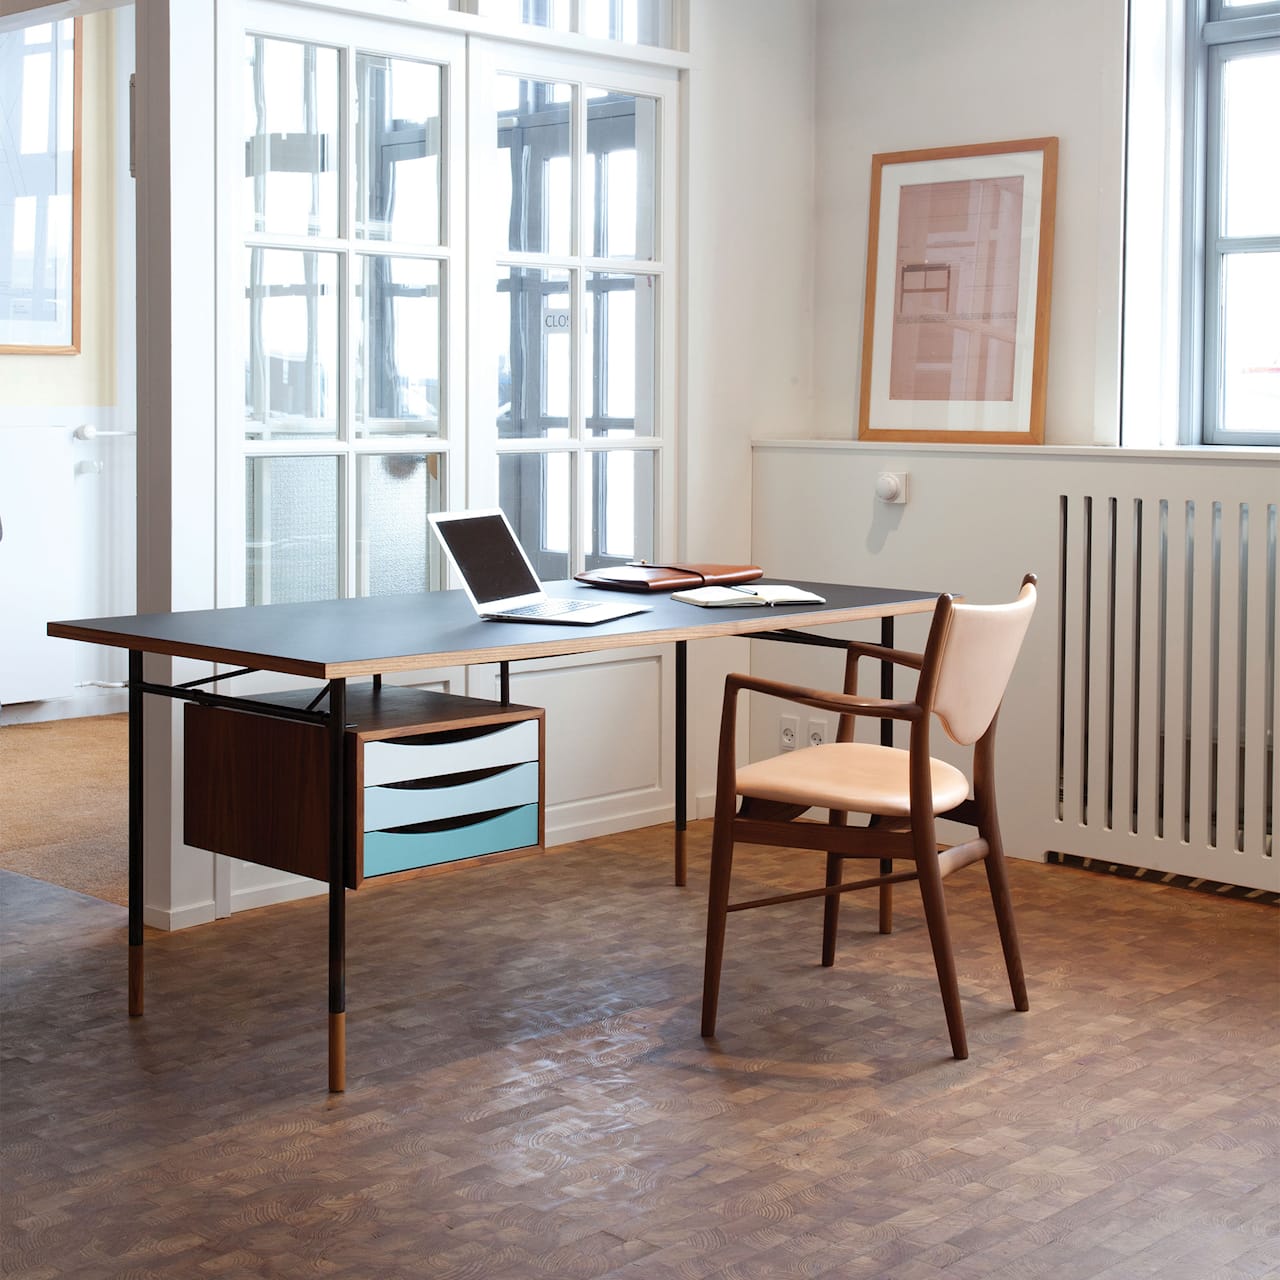 Nyhavn Desk - Med skrivbordslådor